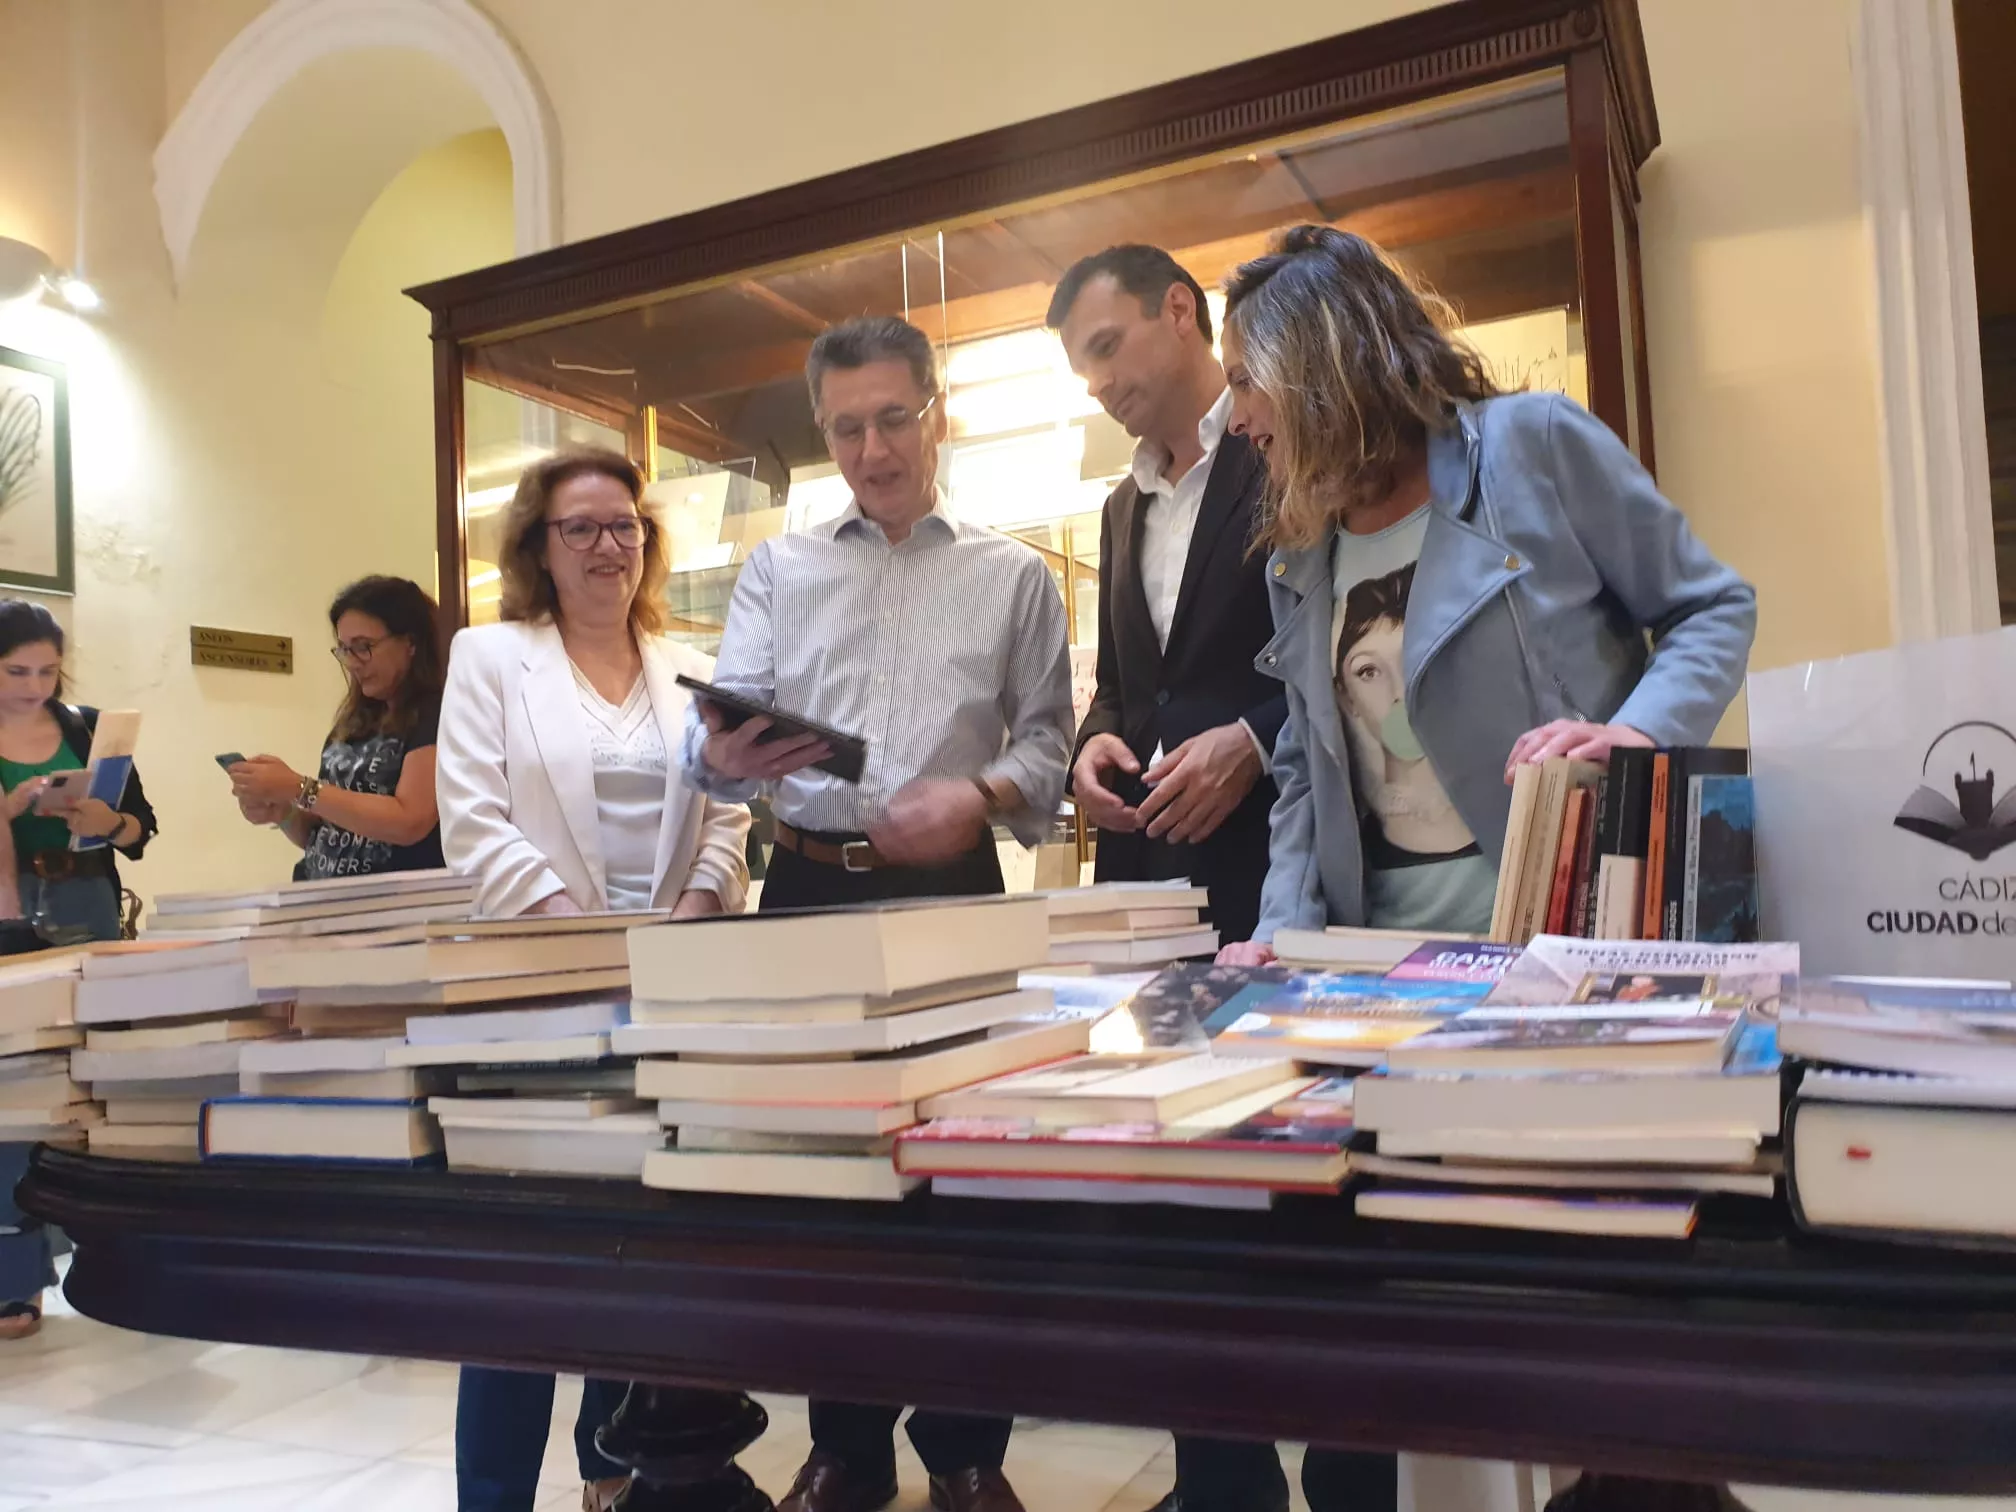 El alcalde acompañado de la teniente de alcalde de Cultura recepciona los libros de la librería Manuel de Falla.